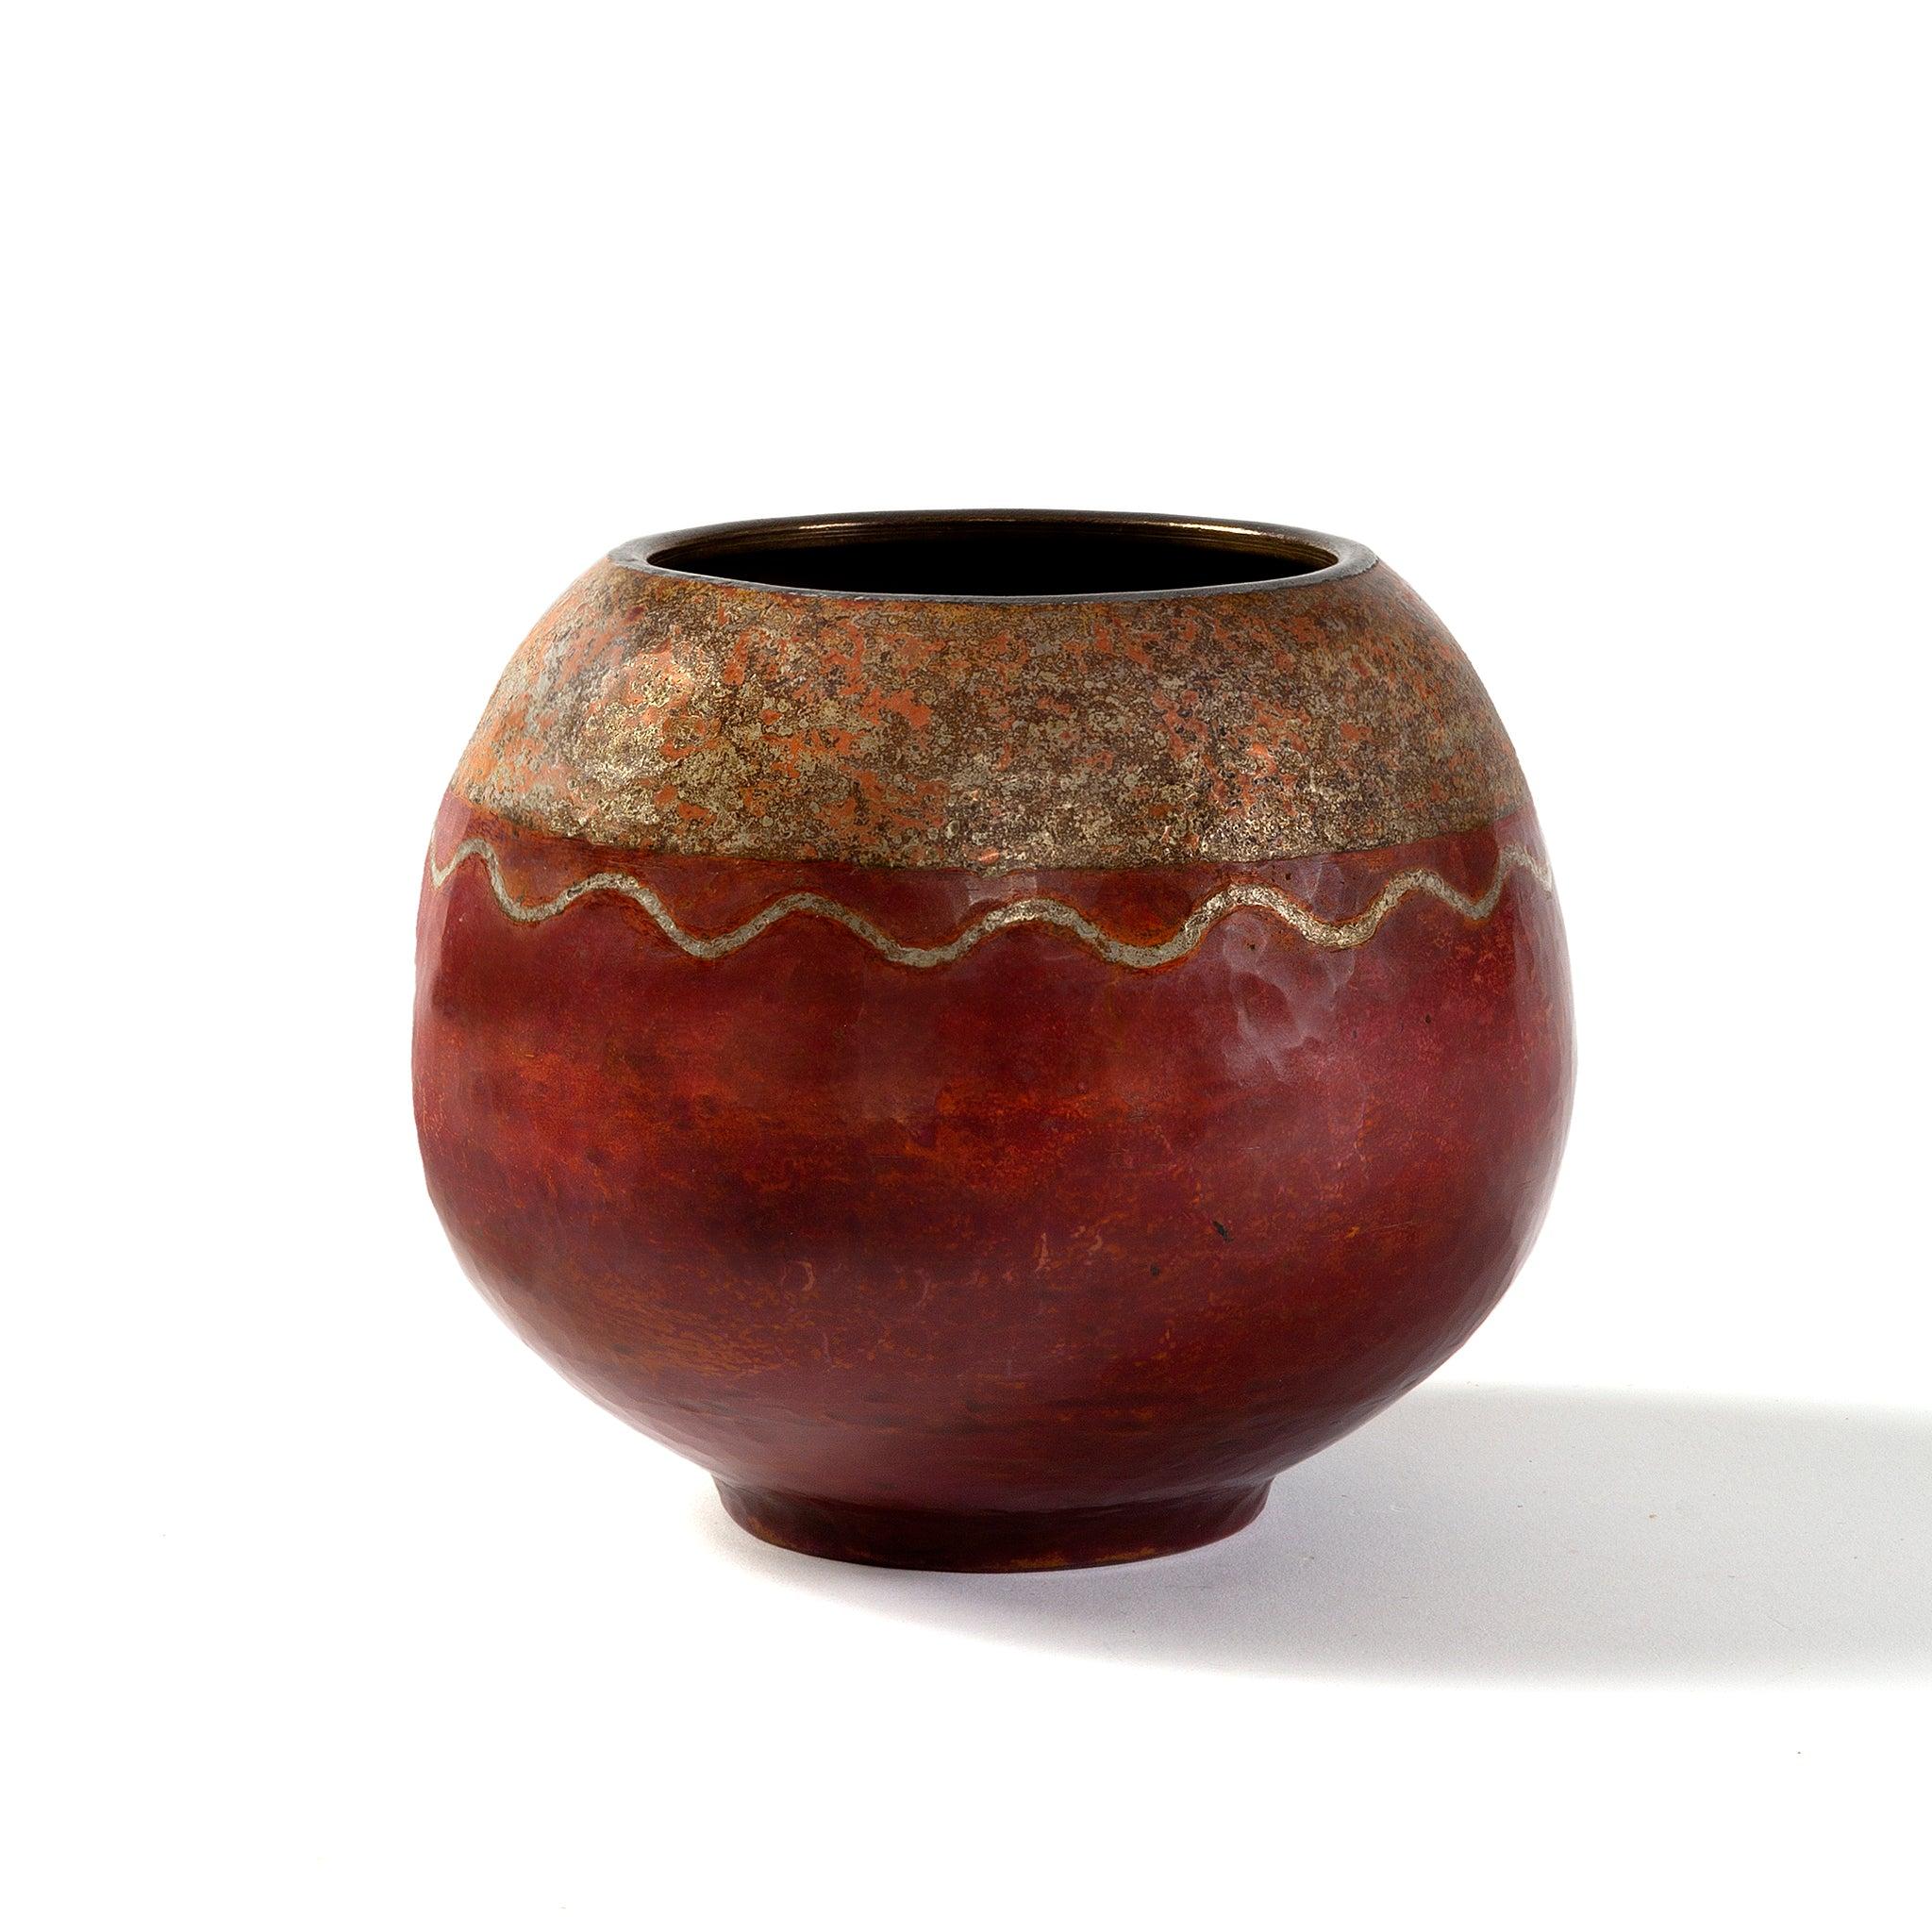 Ce rare vase Art déco français, par Claudius Linossier, a été créé en utilisant la technique complexe connue sous le nom de dinanderie, qui consiste à décorer des récipients en cuivre élevés à la main pour produire des gradations de couleur subtiles